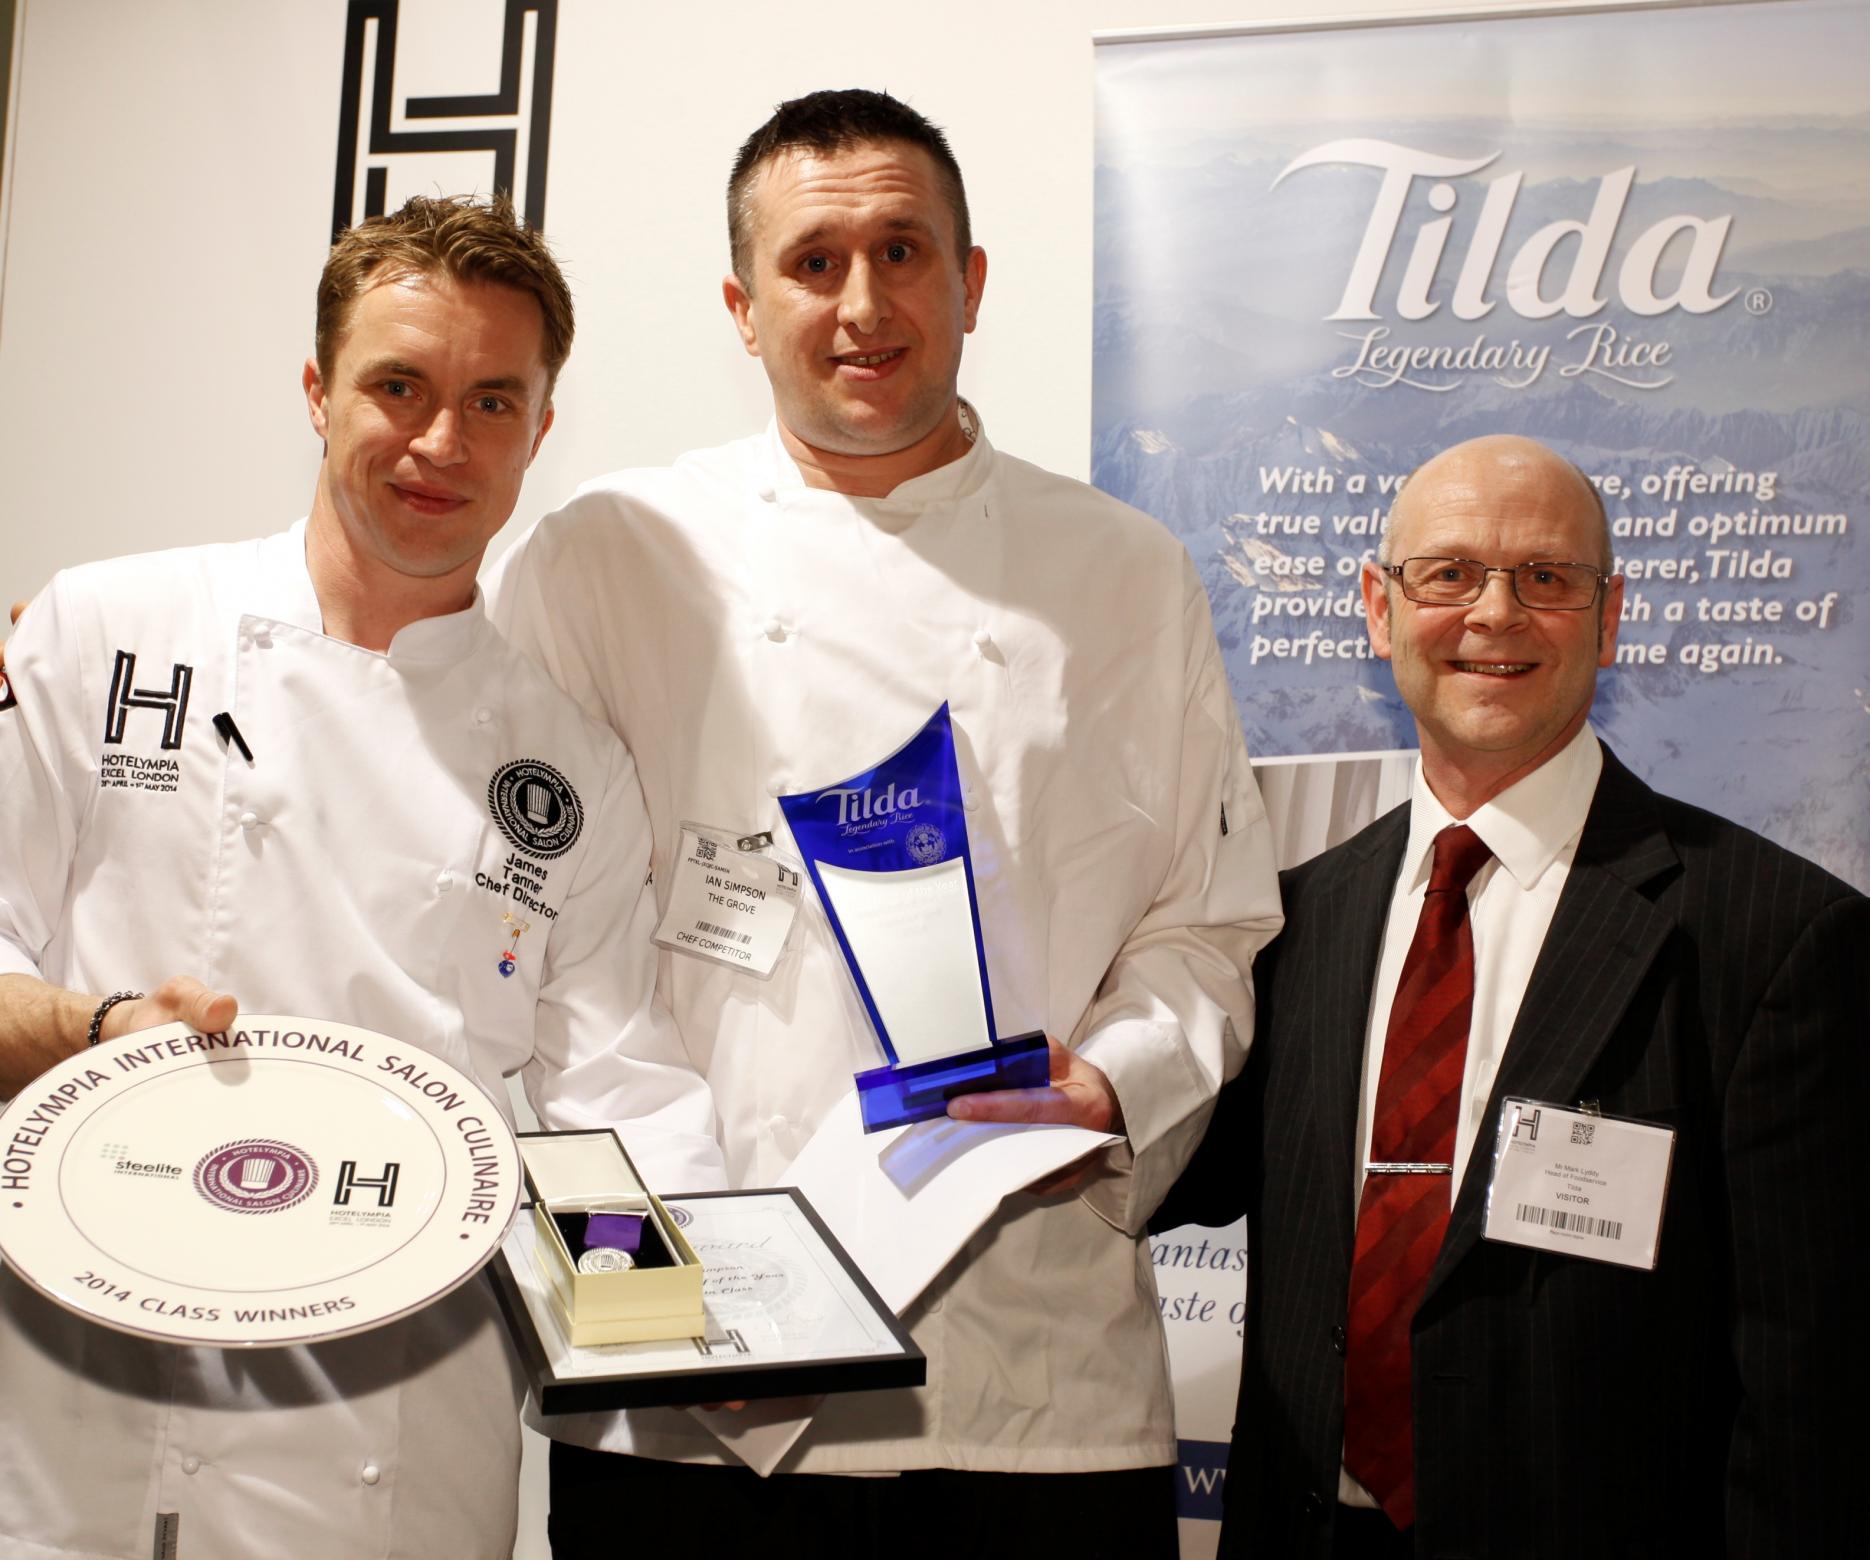 Tilda chef of the year winner